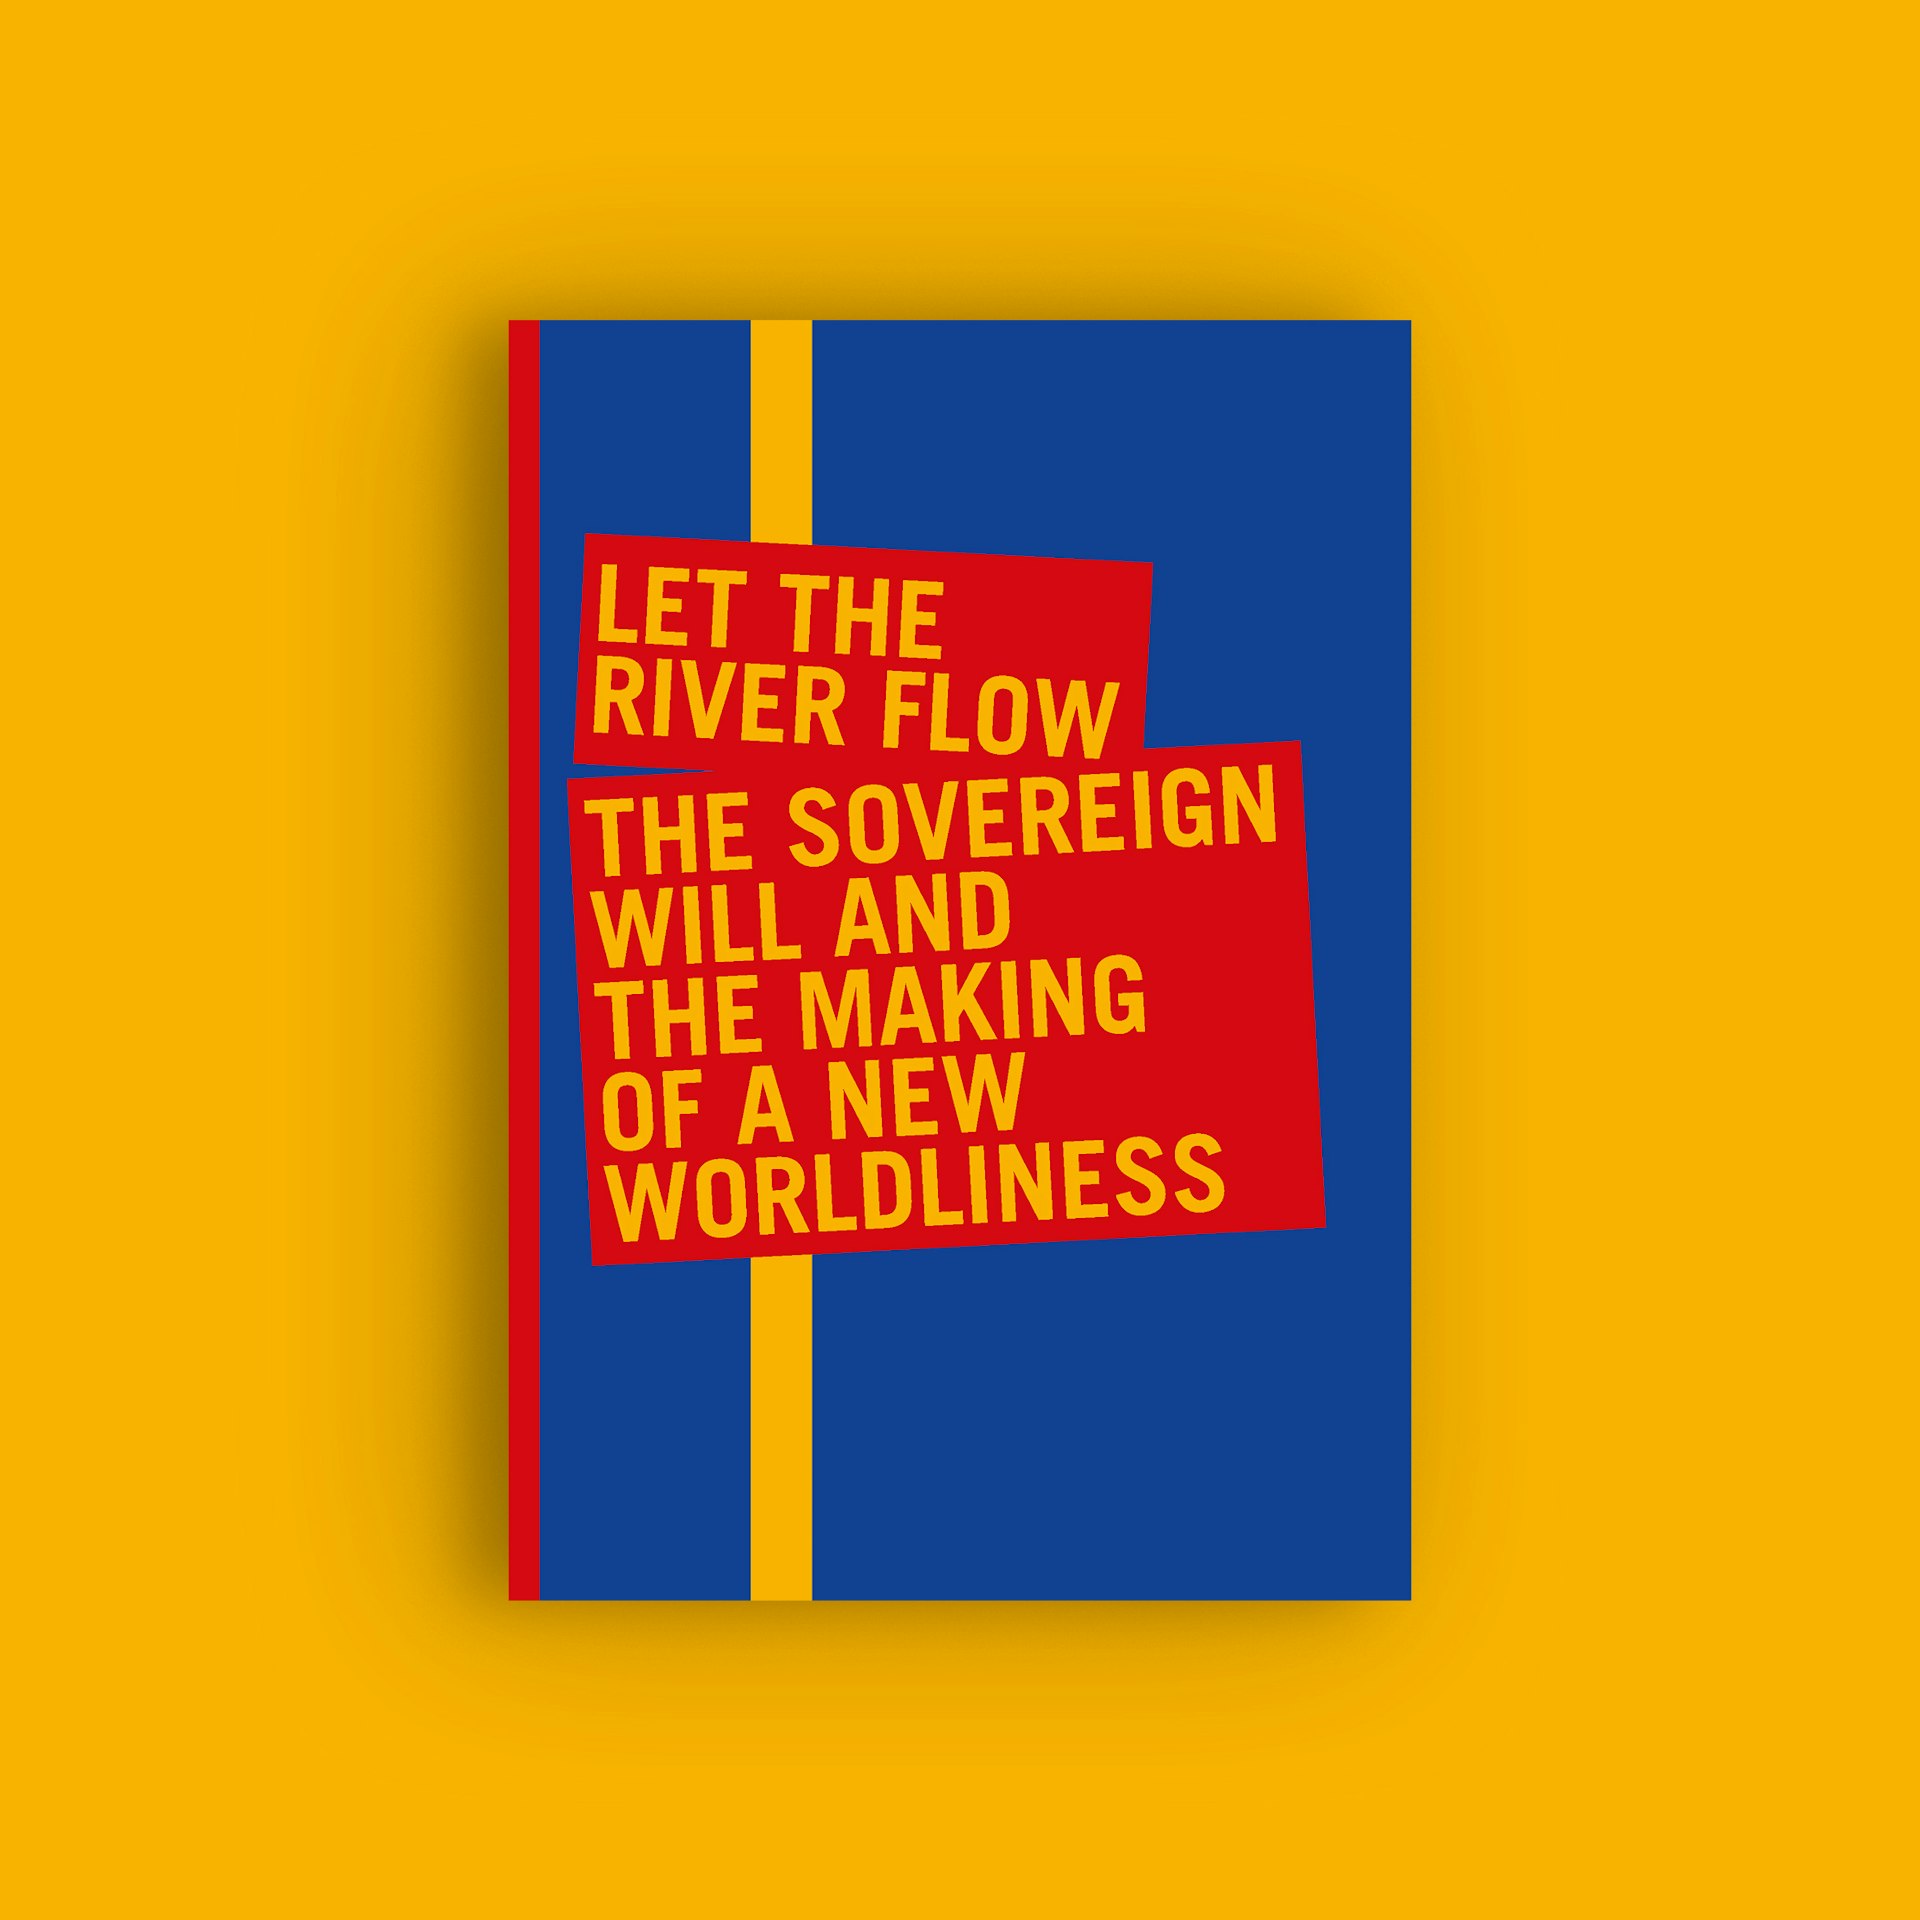 Let the River Flow exhibition booklet